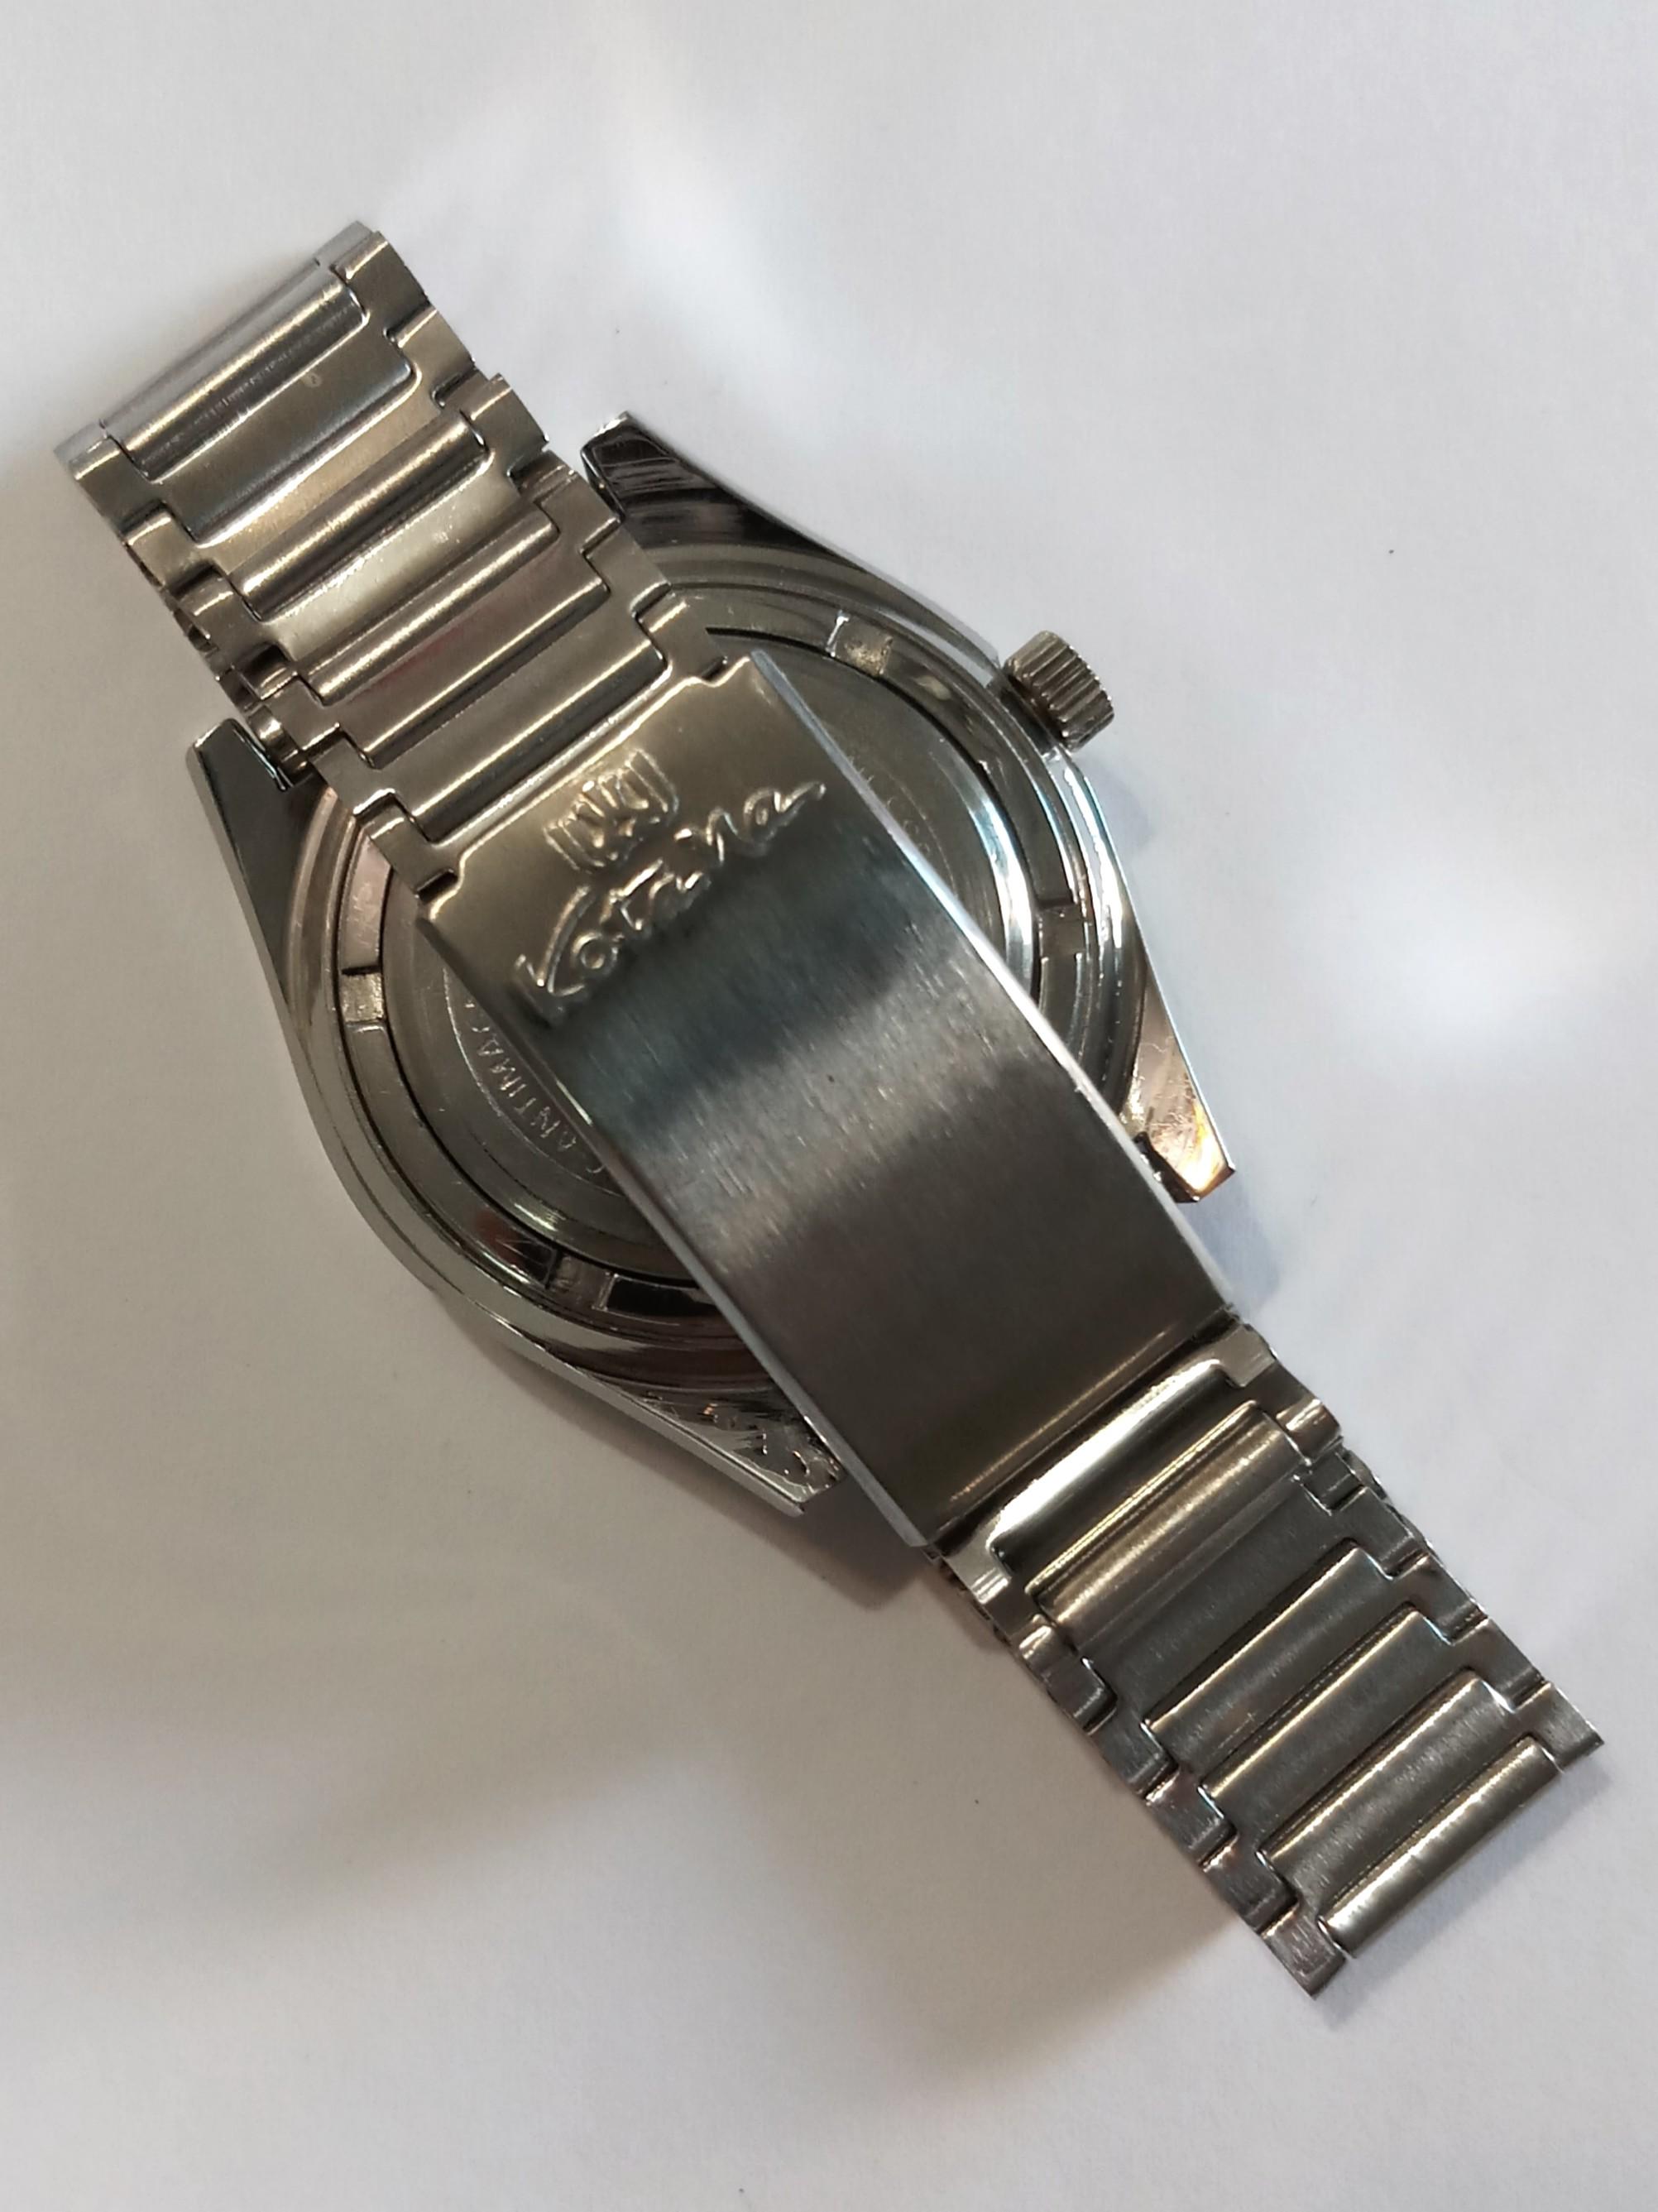 Kotana Automatic Watch Swiss Made, Women's Fashion, Jewelry ...